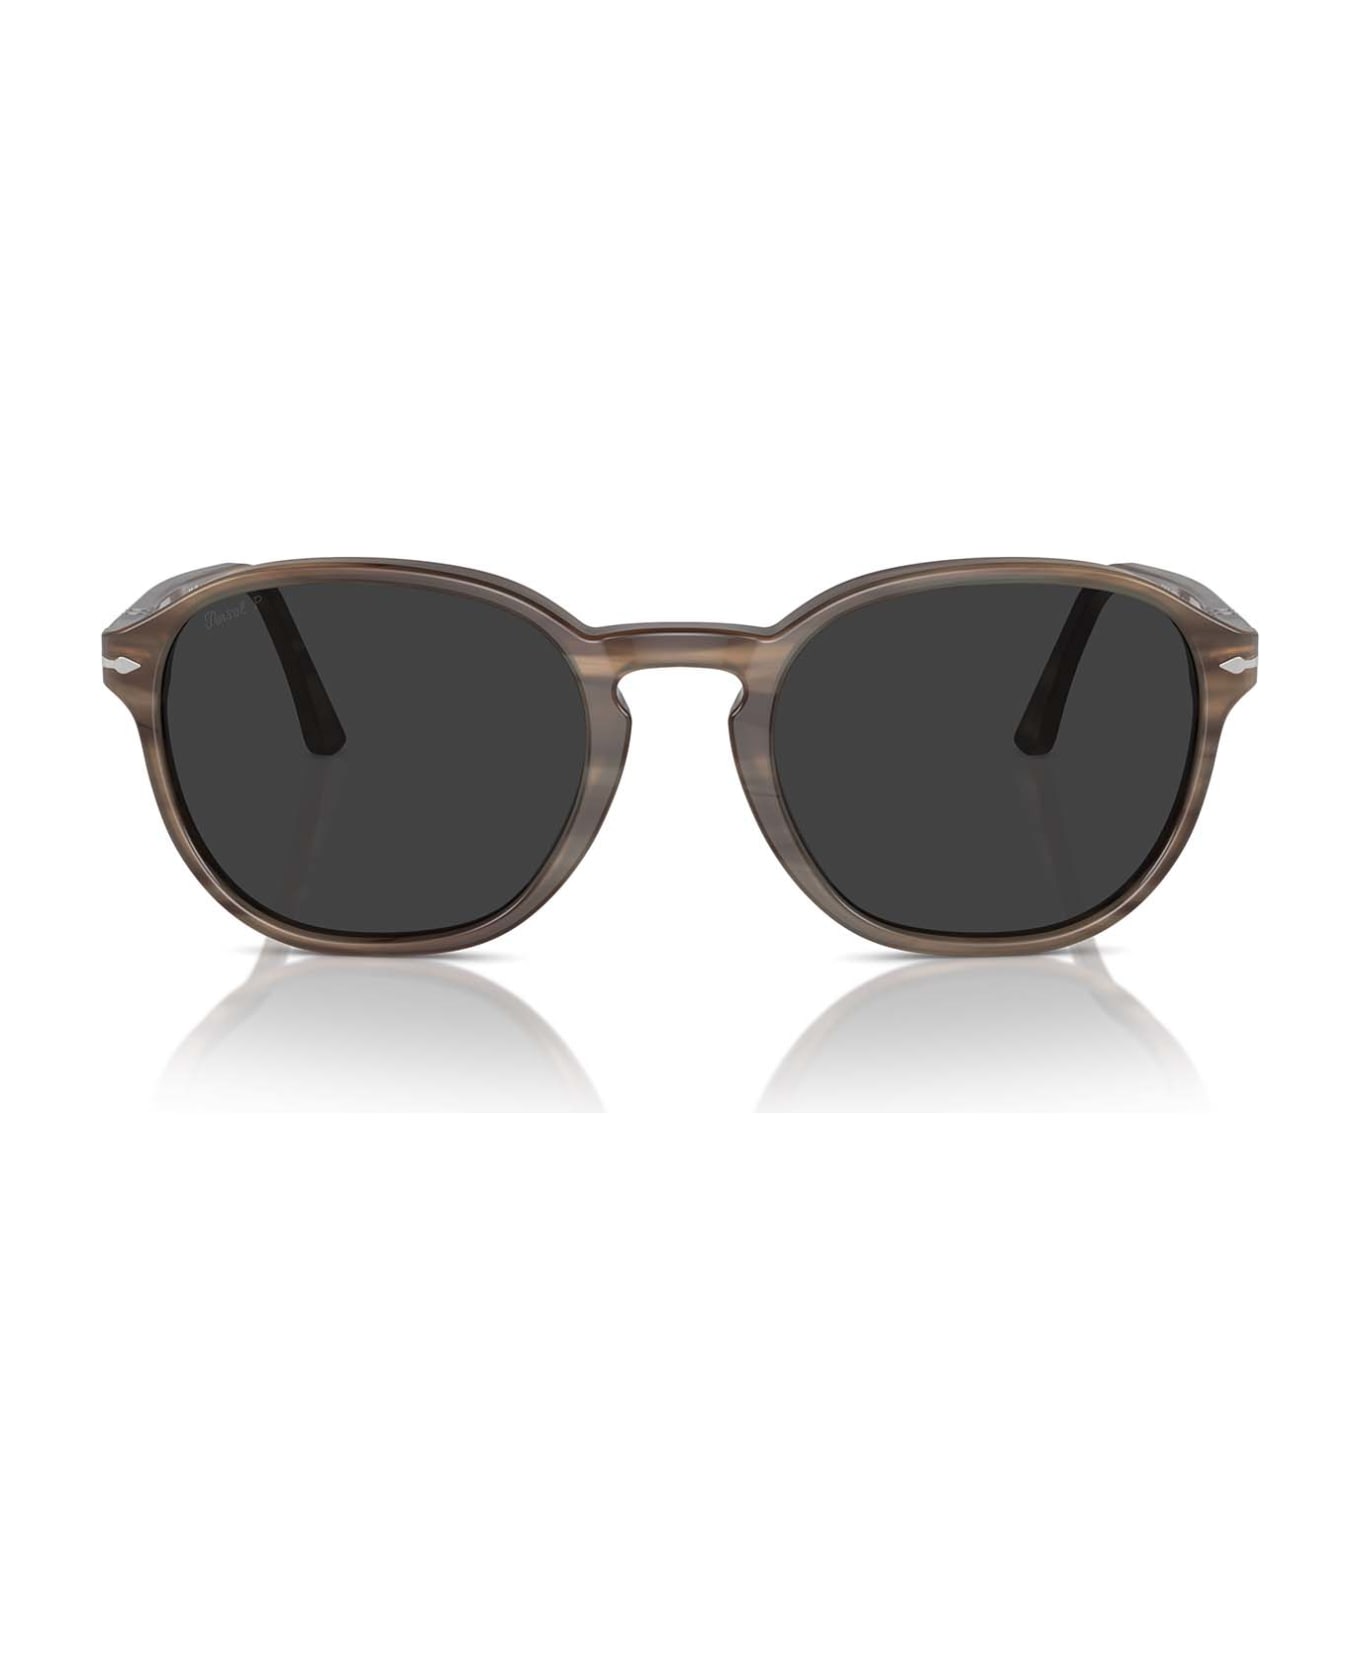 Persol Po3343s Striped Brown Sunglasses - Striped Brown